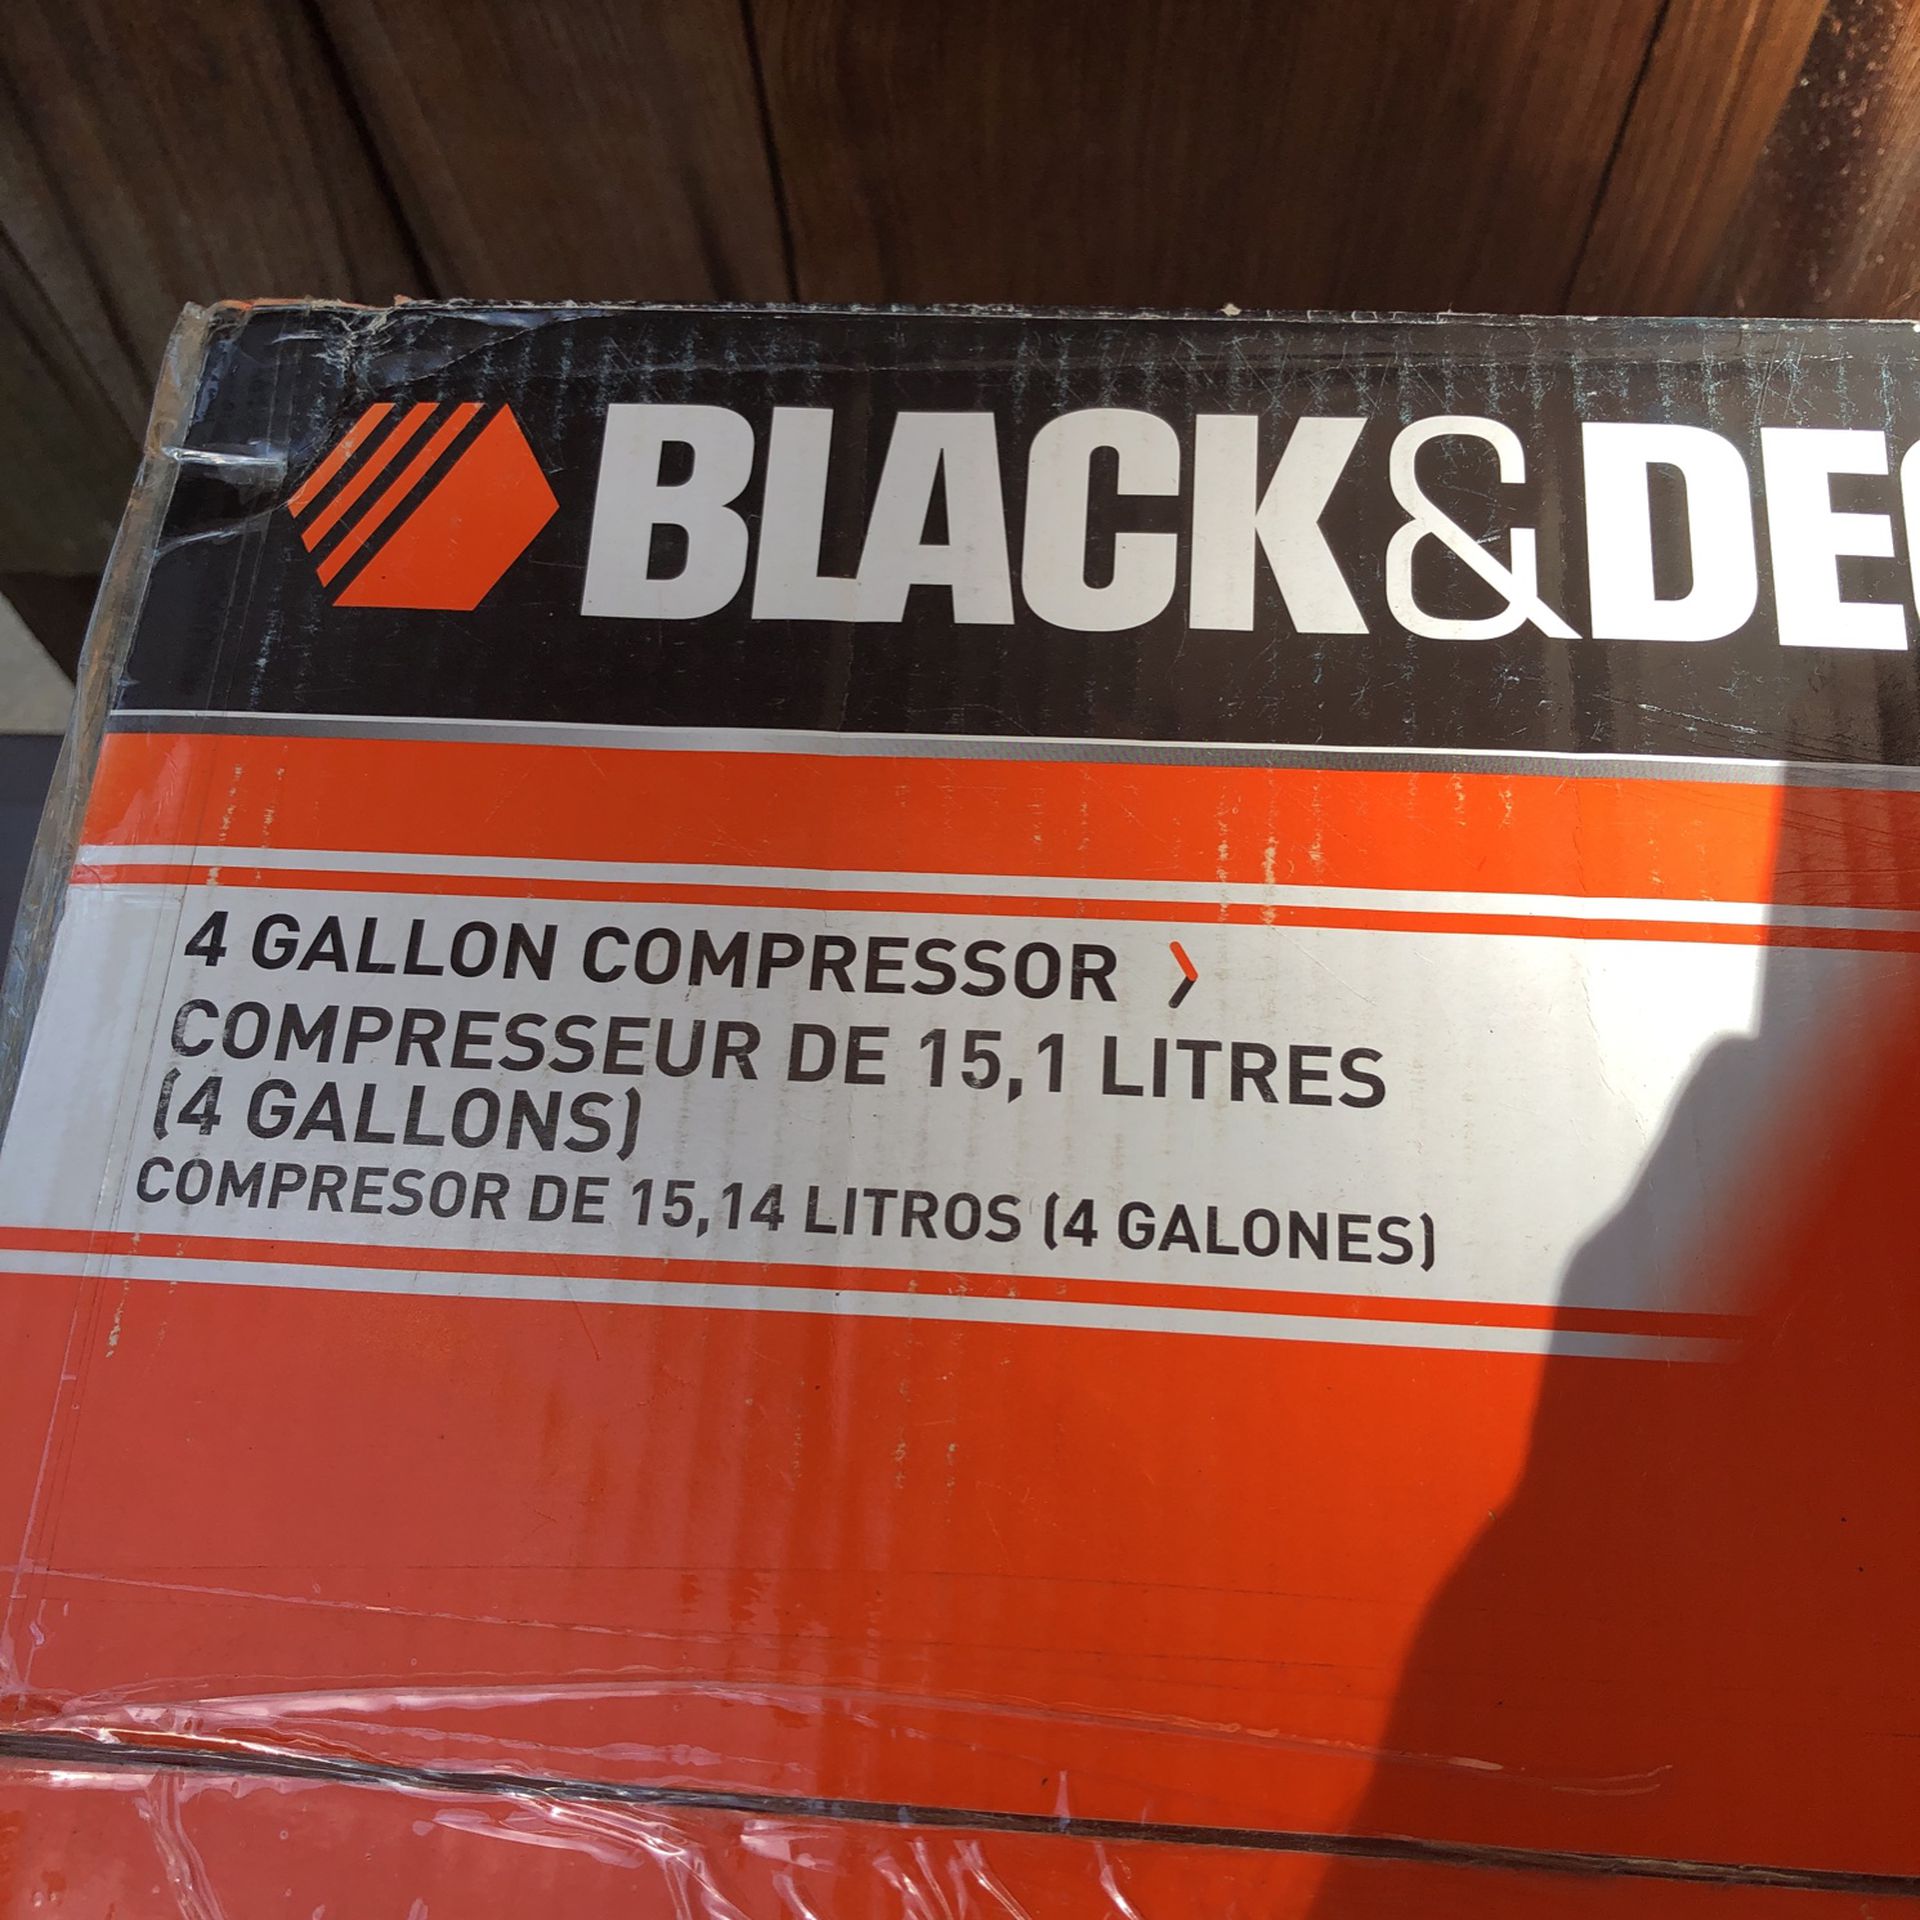 Black & Decker 4 Gallon Compressor